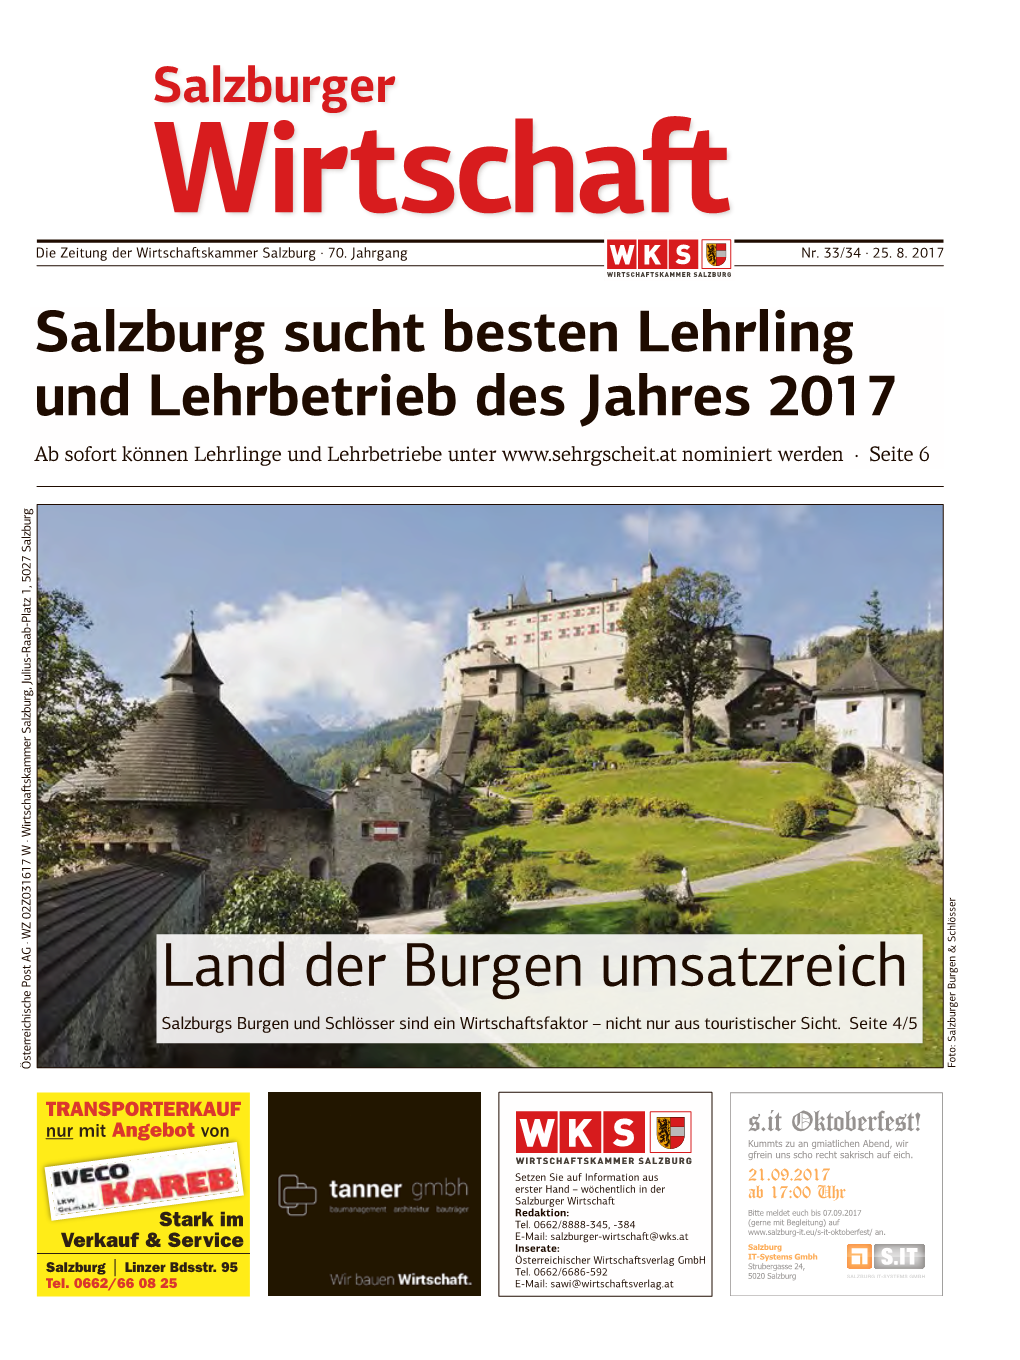 Salzburg Sucht Besten Lehrling Und Lehrbetrieb Des Jahres 2017